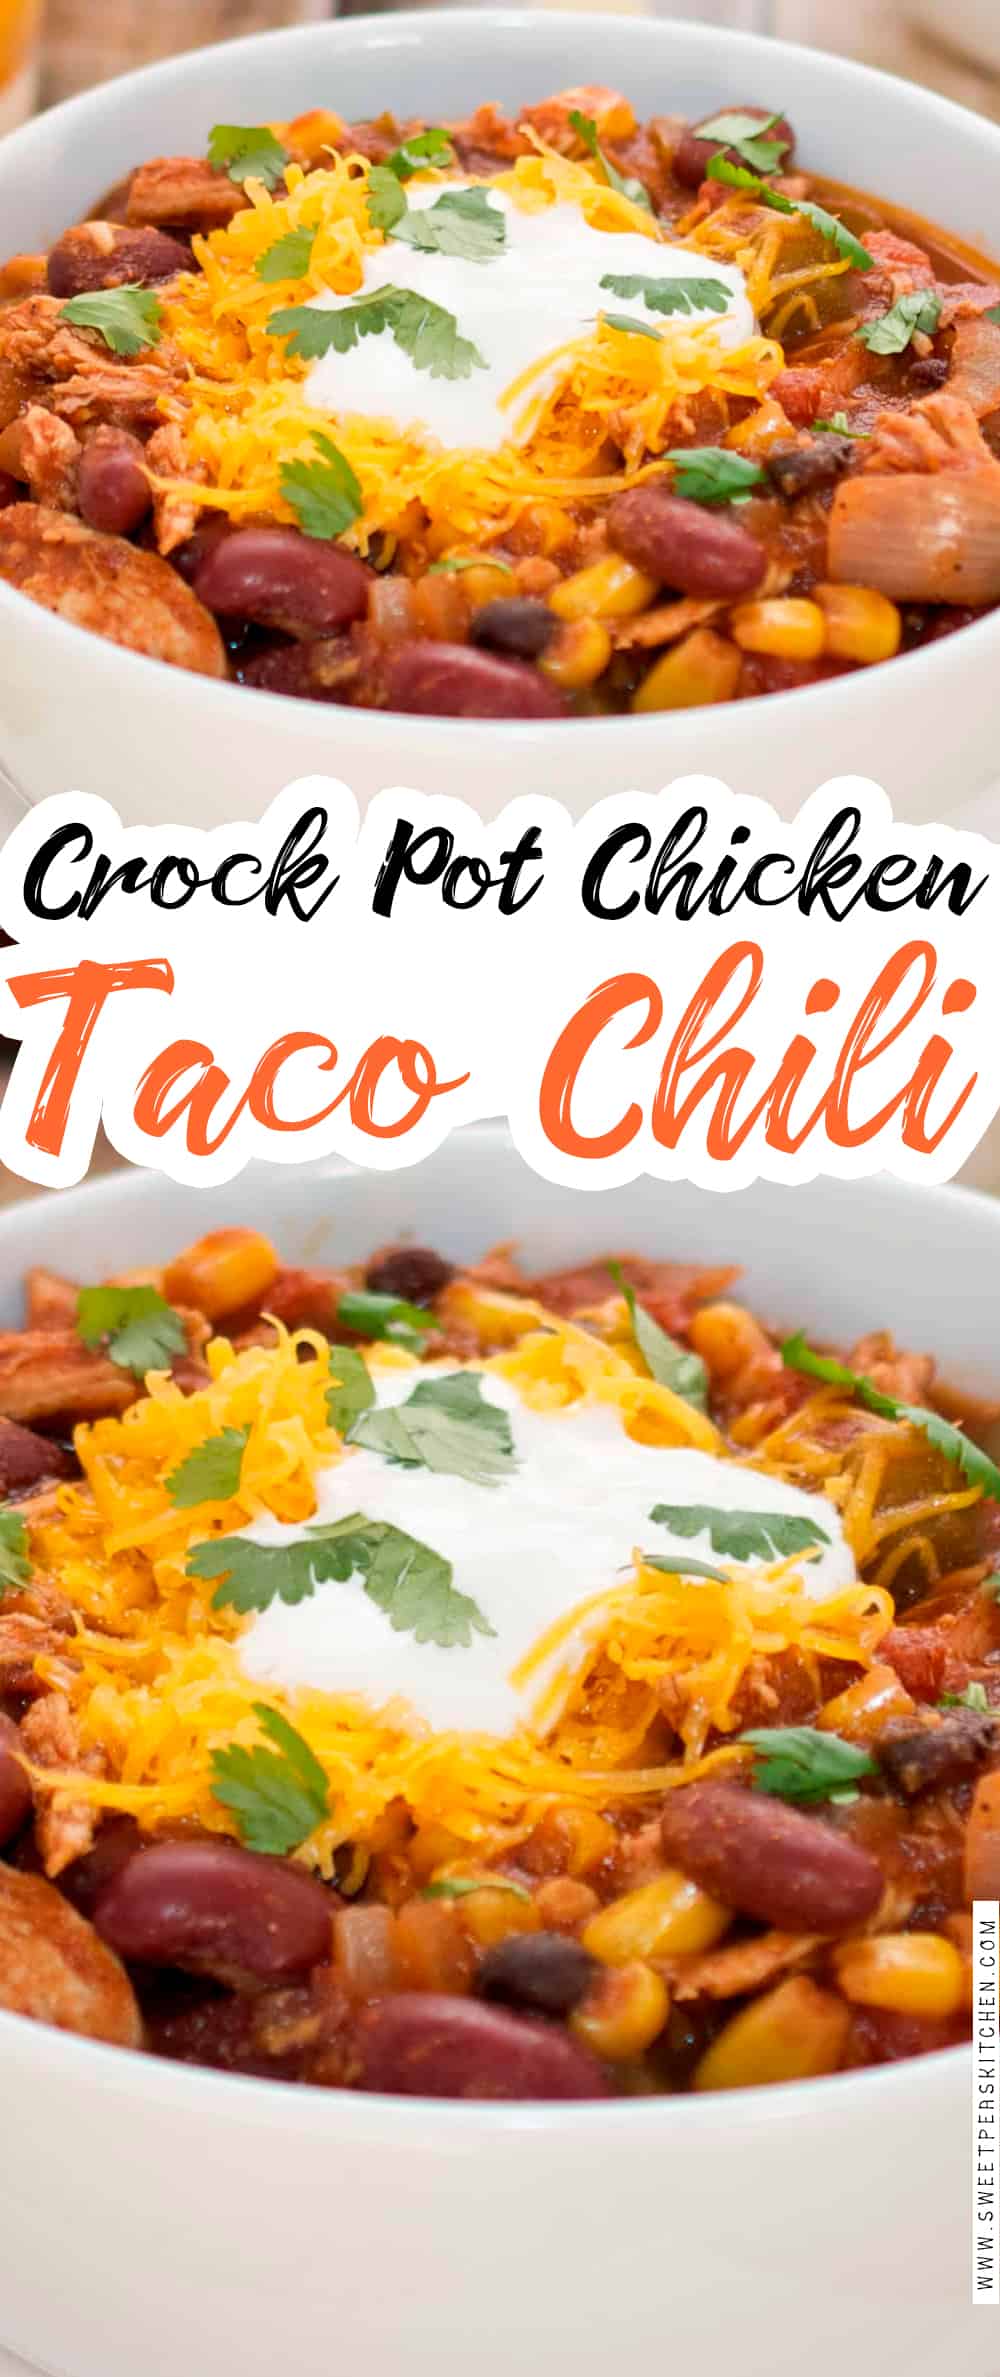 Crock Pot Chicken Taco Chili